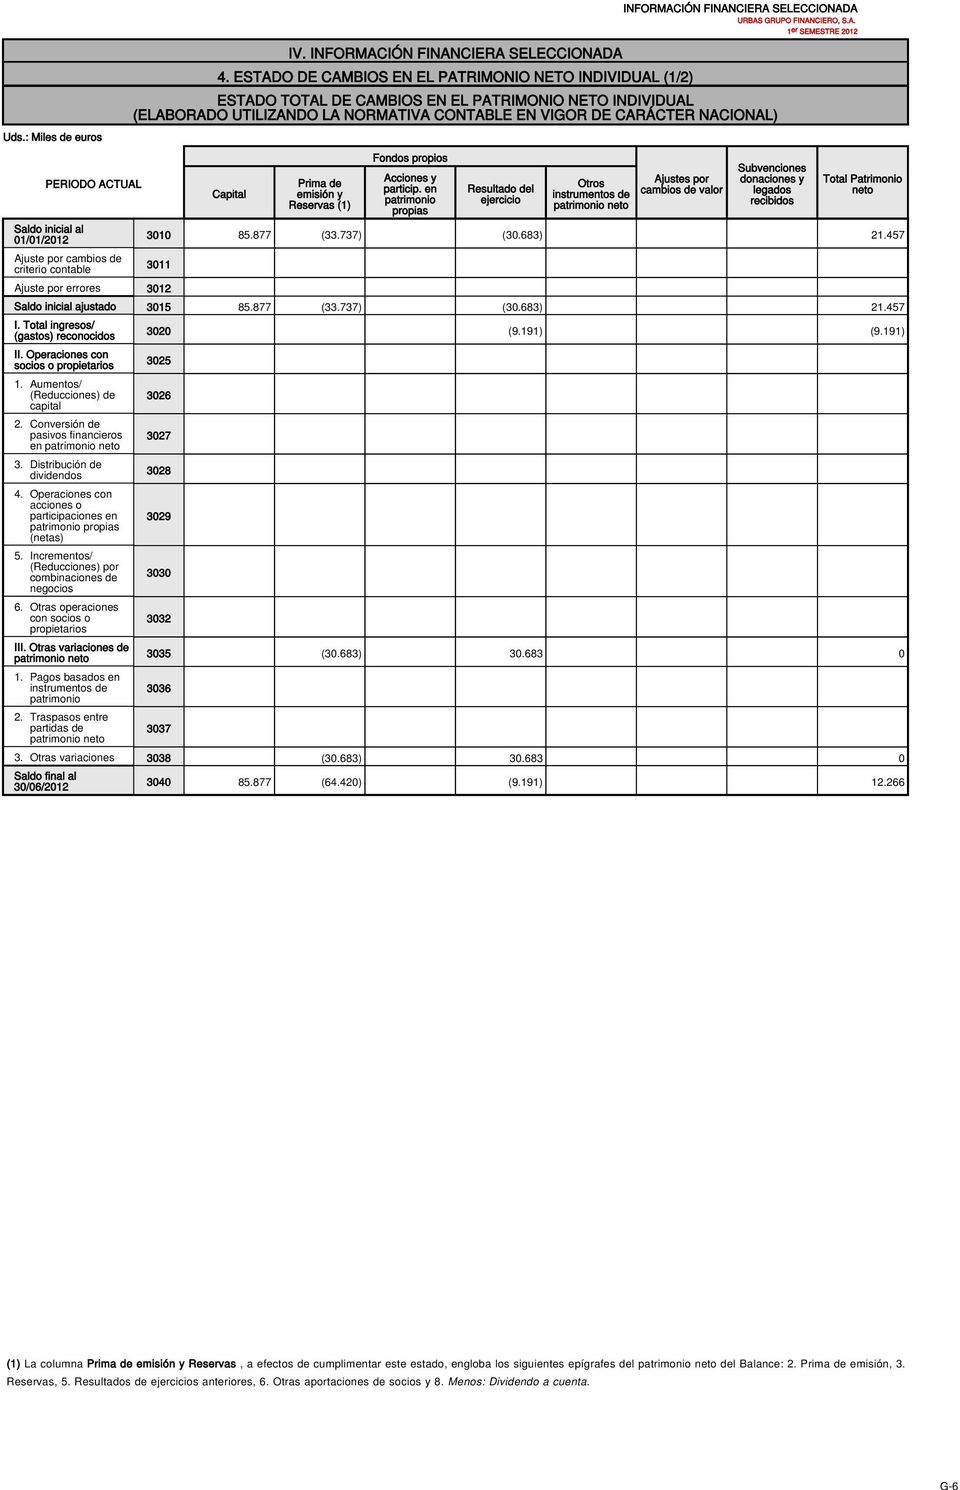 : Miles de euros PERIODO ACTUAL Saldo inicial al 01/01/2012 Ajuste por cambios de criterio contable Capital Prima de emisión y Reservas (1) Fondos propios Acciones y particip.